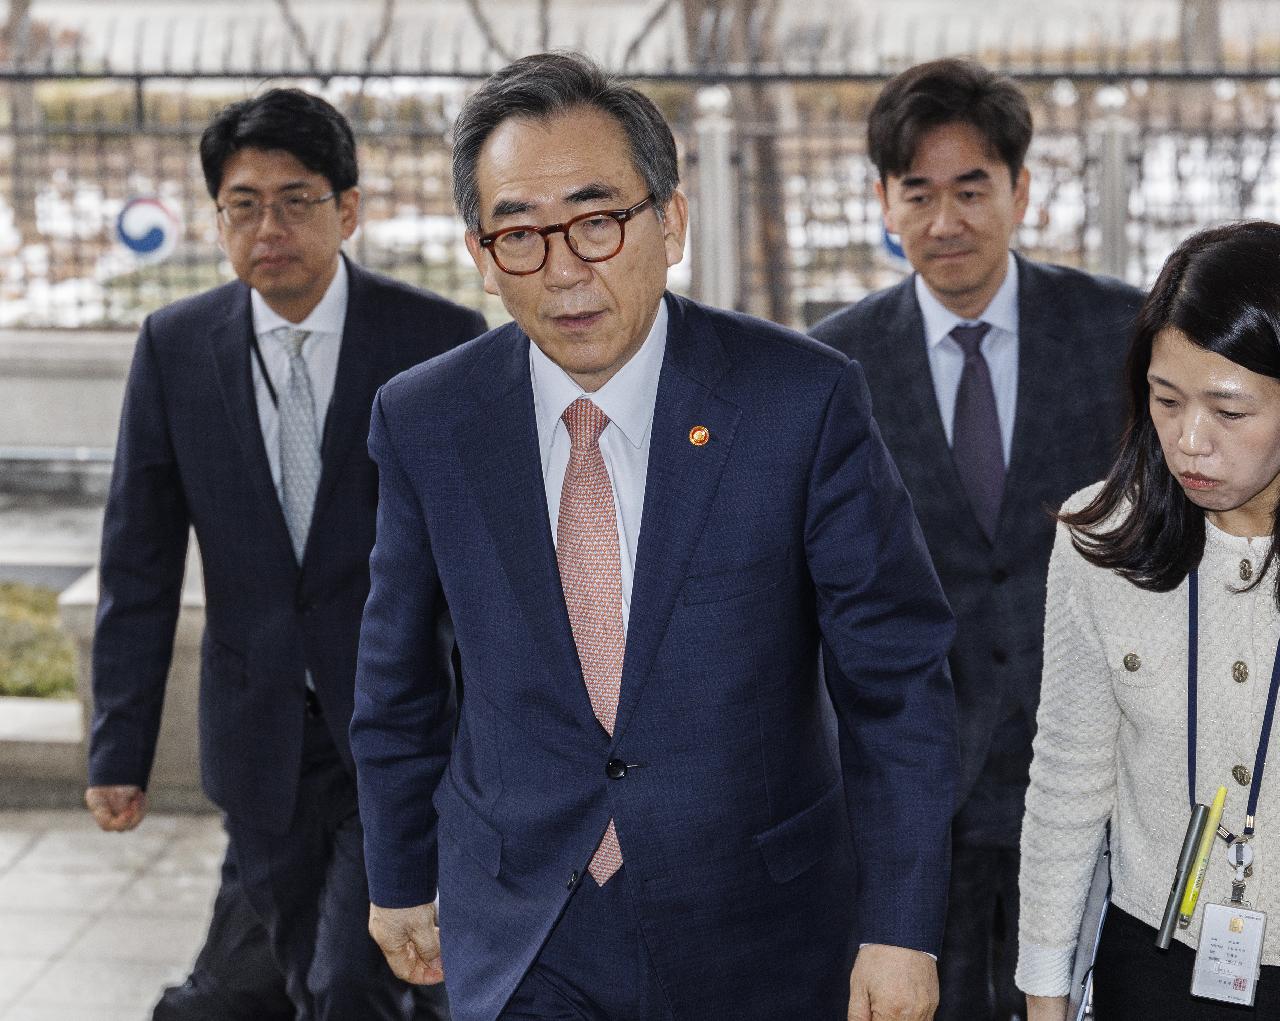 韩外长朴振致电祝贺秦刚就任中国外交部长 | 韩联社